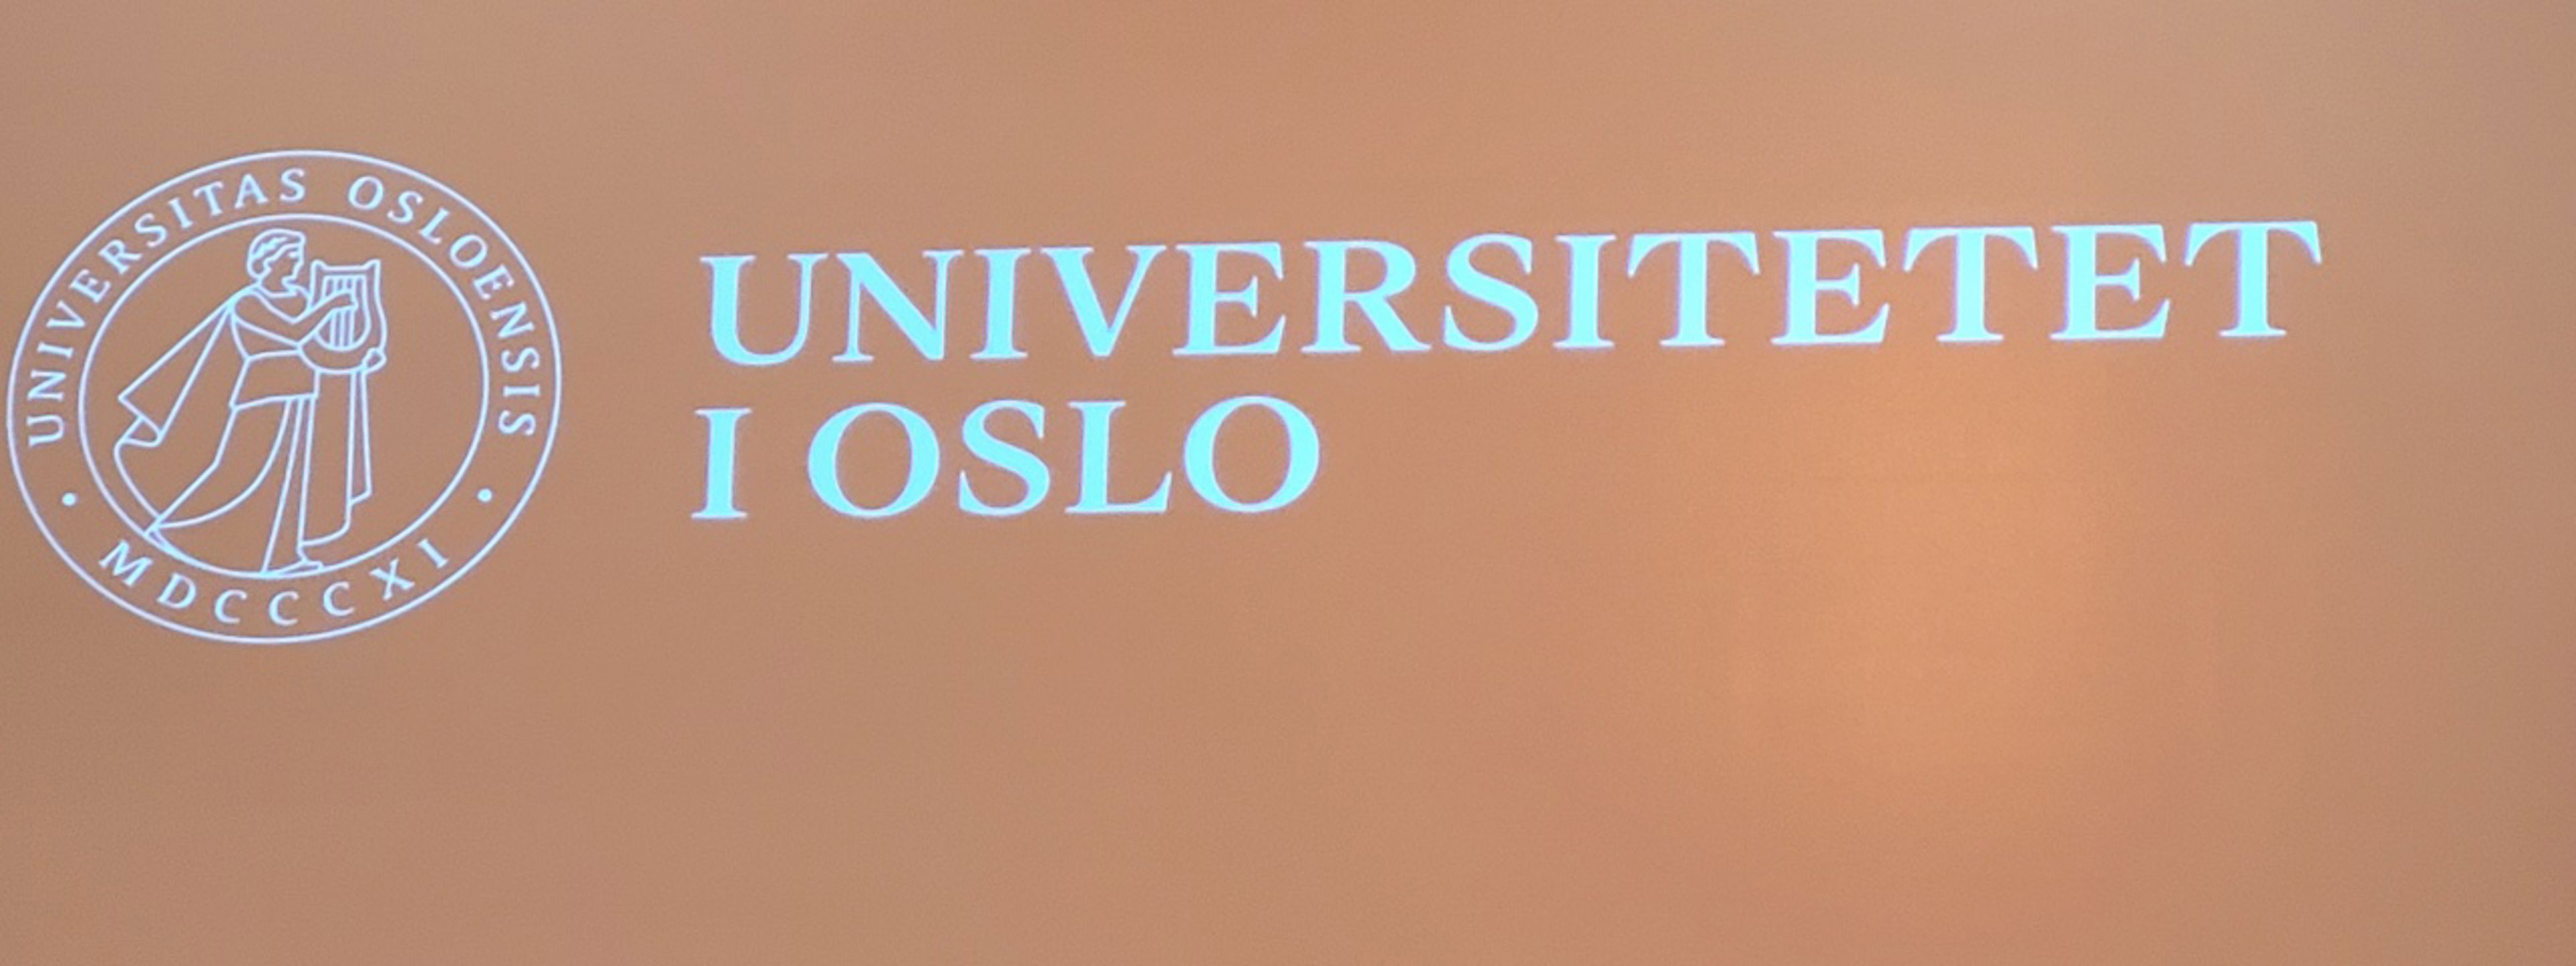 Plakat med navnet til Universitetet i Oslo